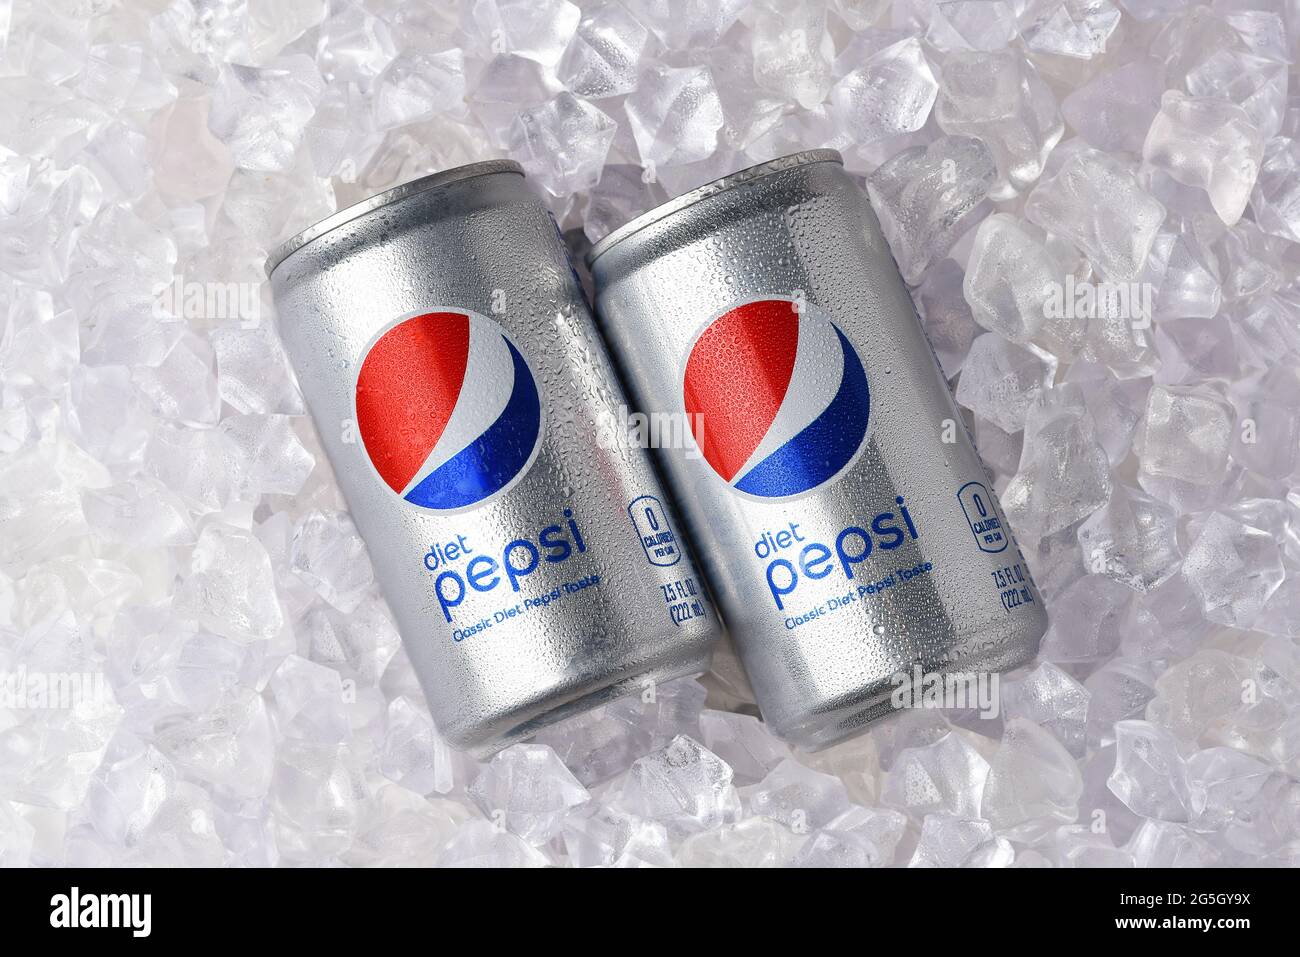 IRVINE, CALIFORNIA - 26 GIUGNO 2021: Due lattine di Dieta Pepsi in un letto di ghiaccio. Foto Stock